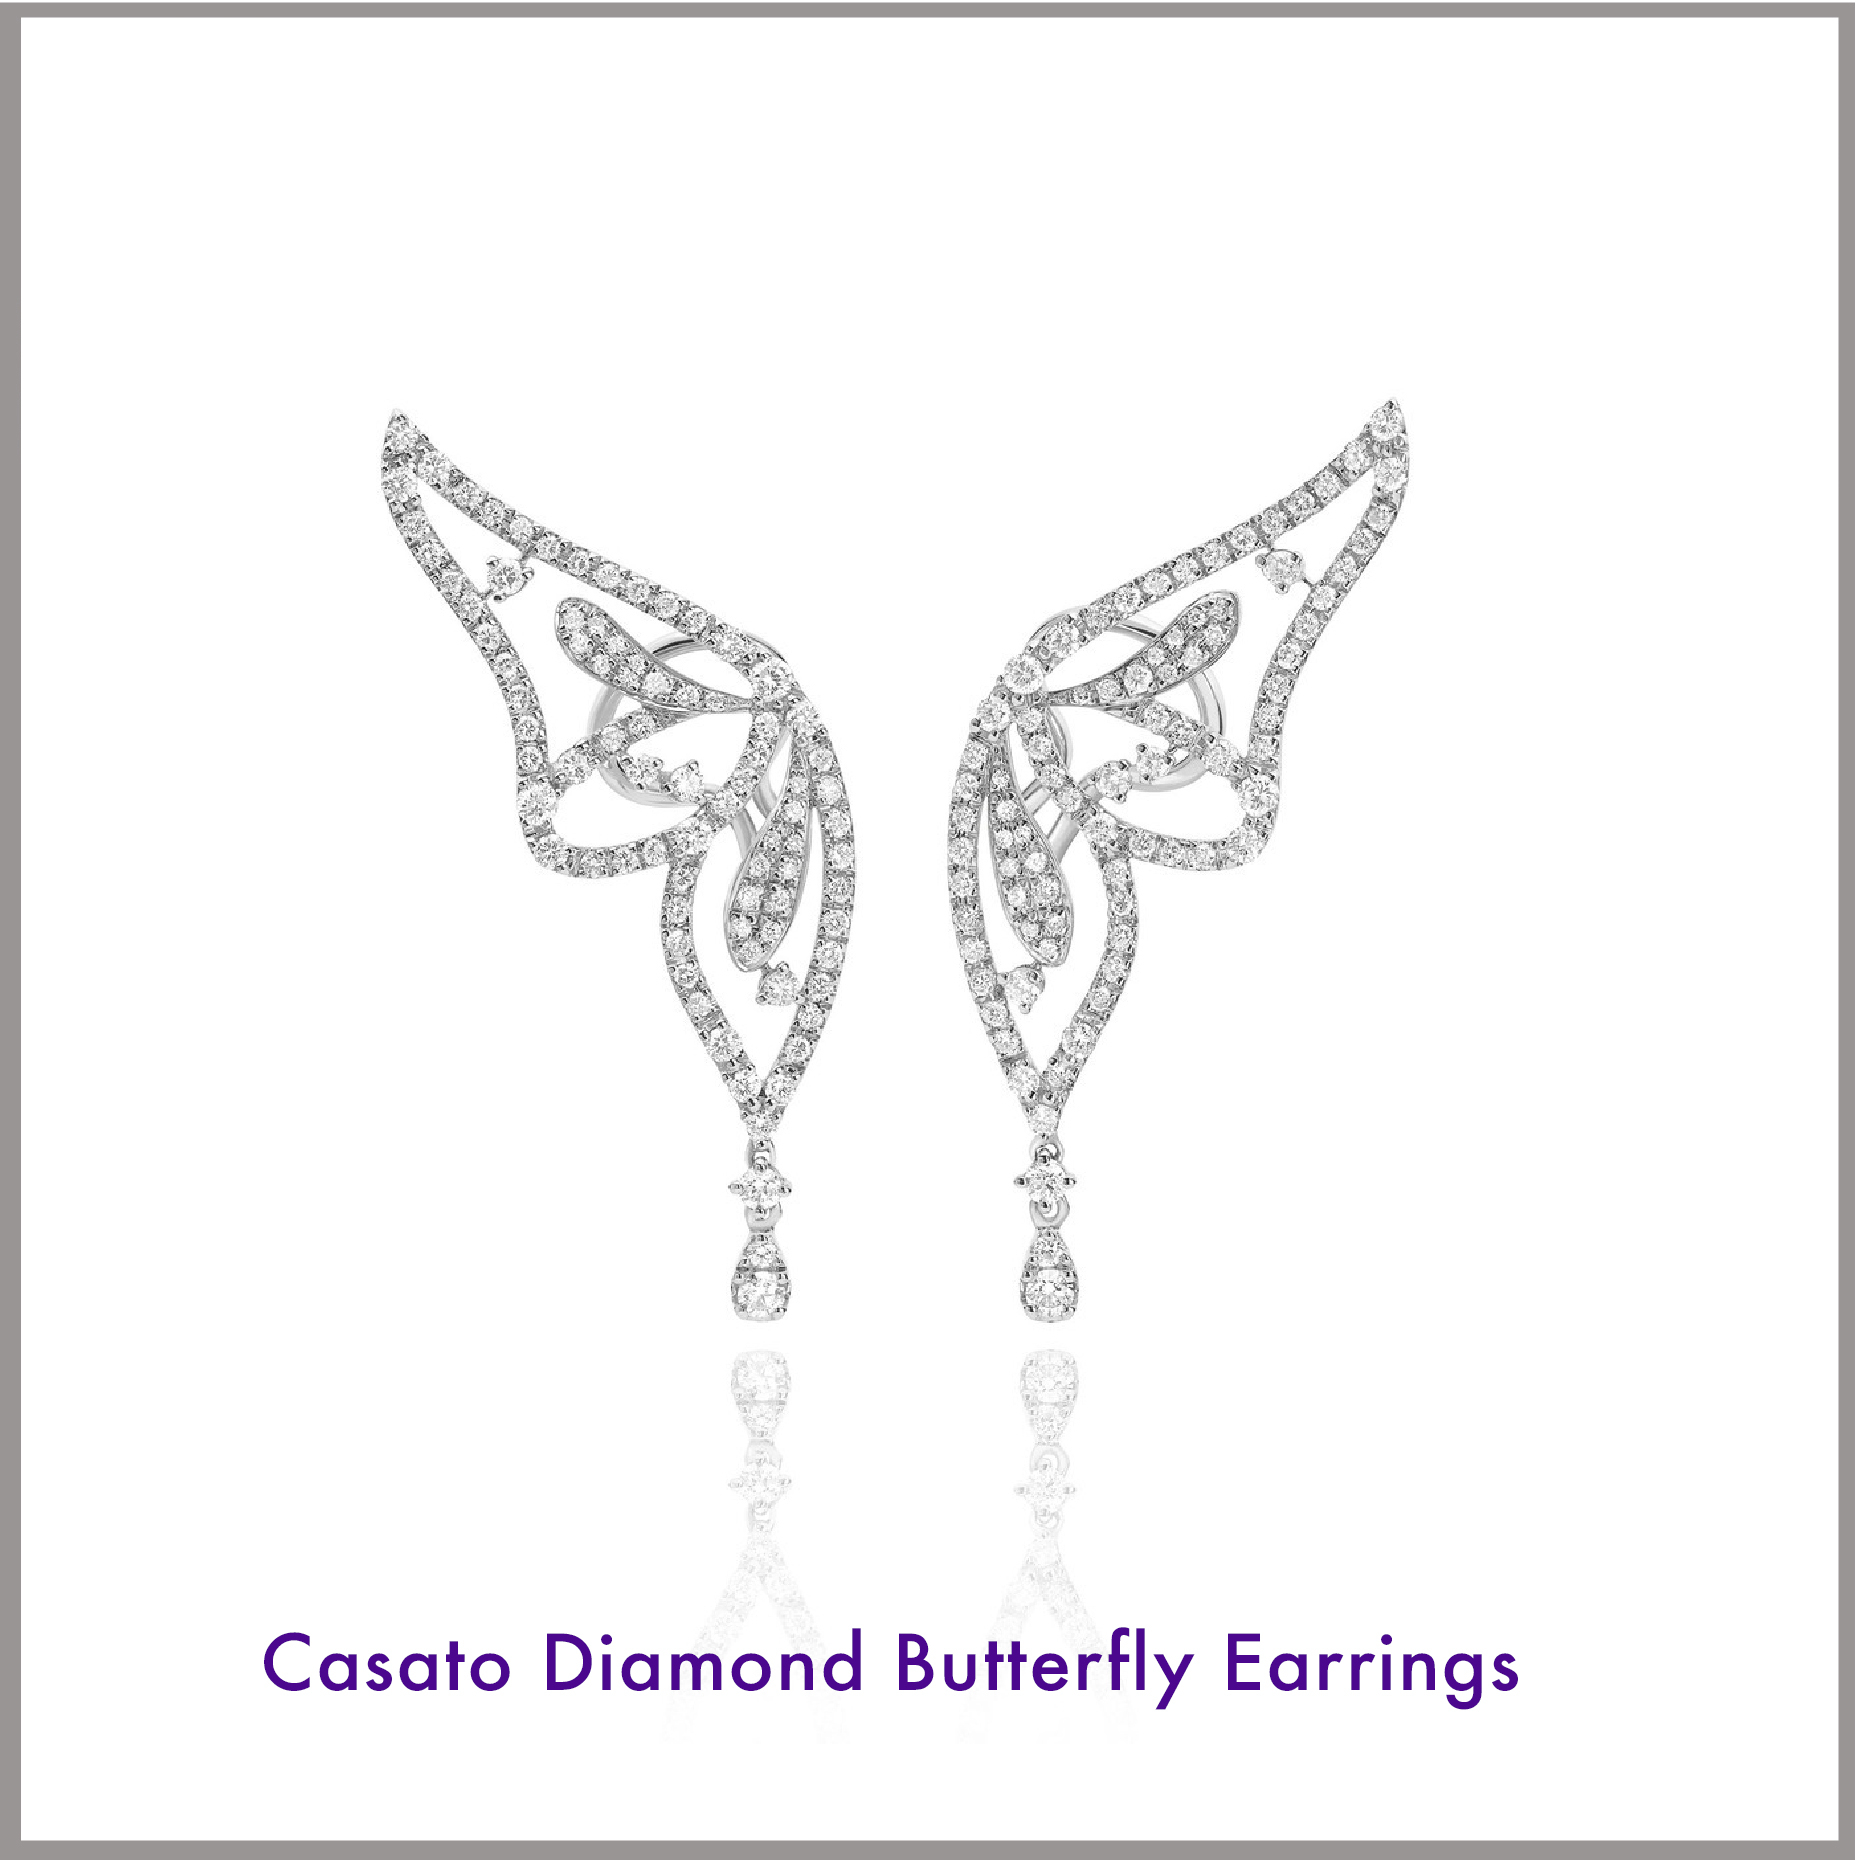 Casato Diamond Butterfly Earrings